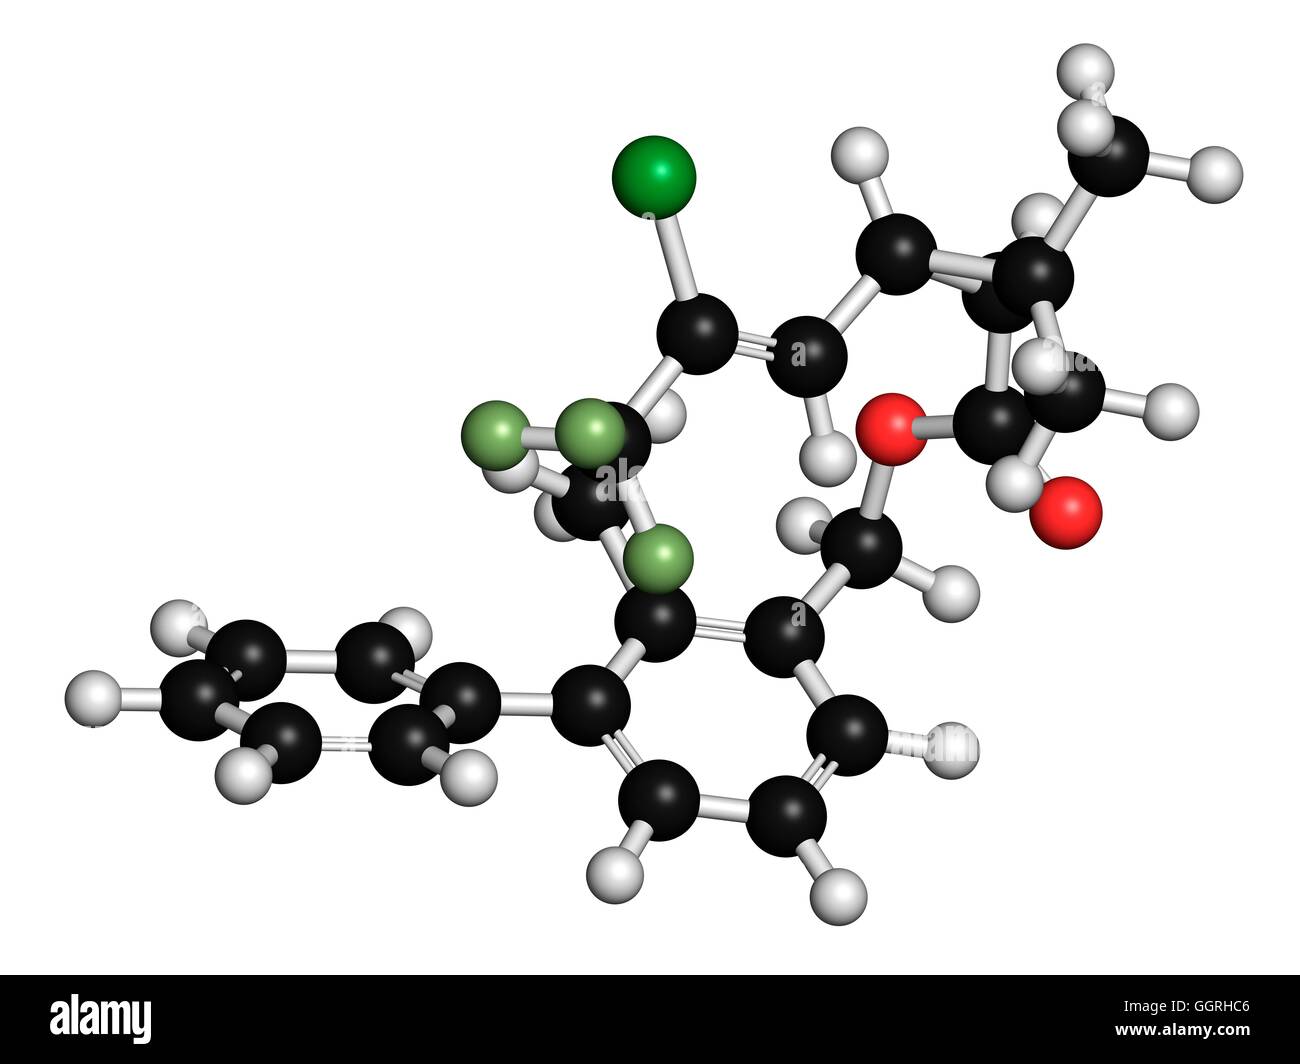 La bifentrina molécula insecticida piretroide (clase). 3D rendering. Los  átomos son representados como esferas con codificación de color  convencional: hidrógeno (blanco), el carbono (negro), el oxígeno (en rojo),  el cloro (verde), el